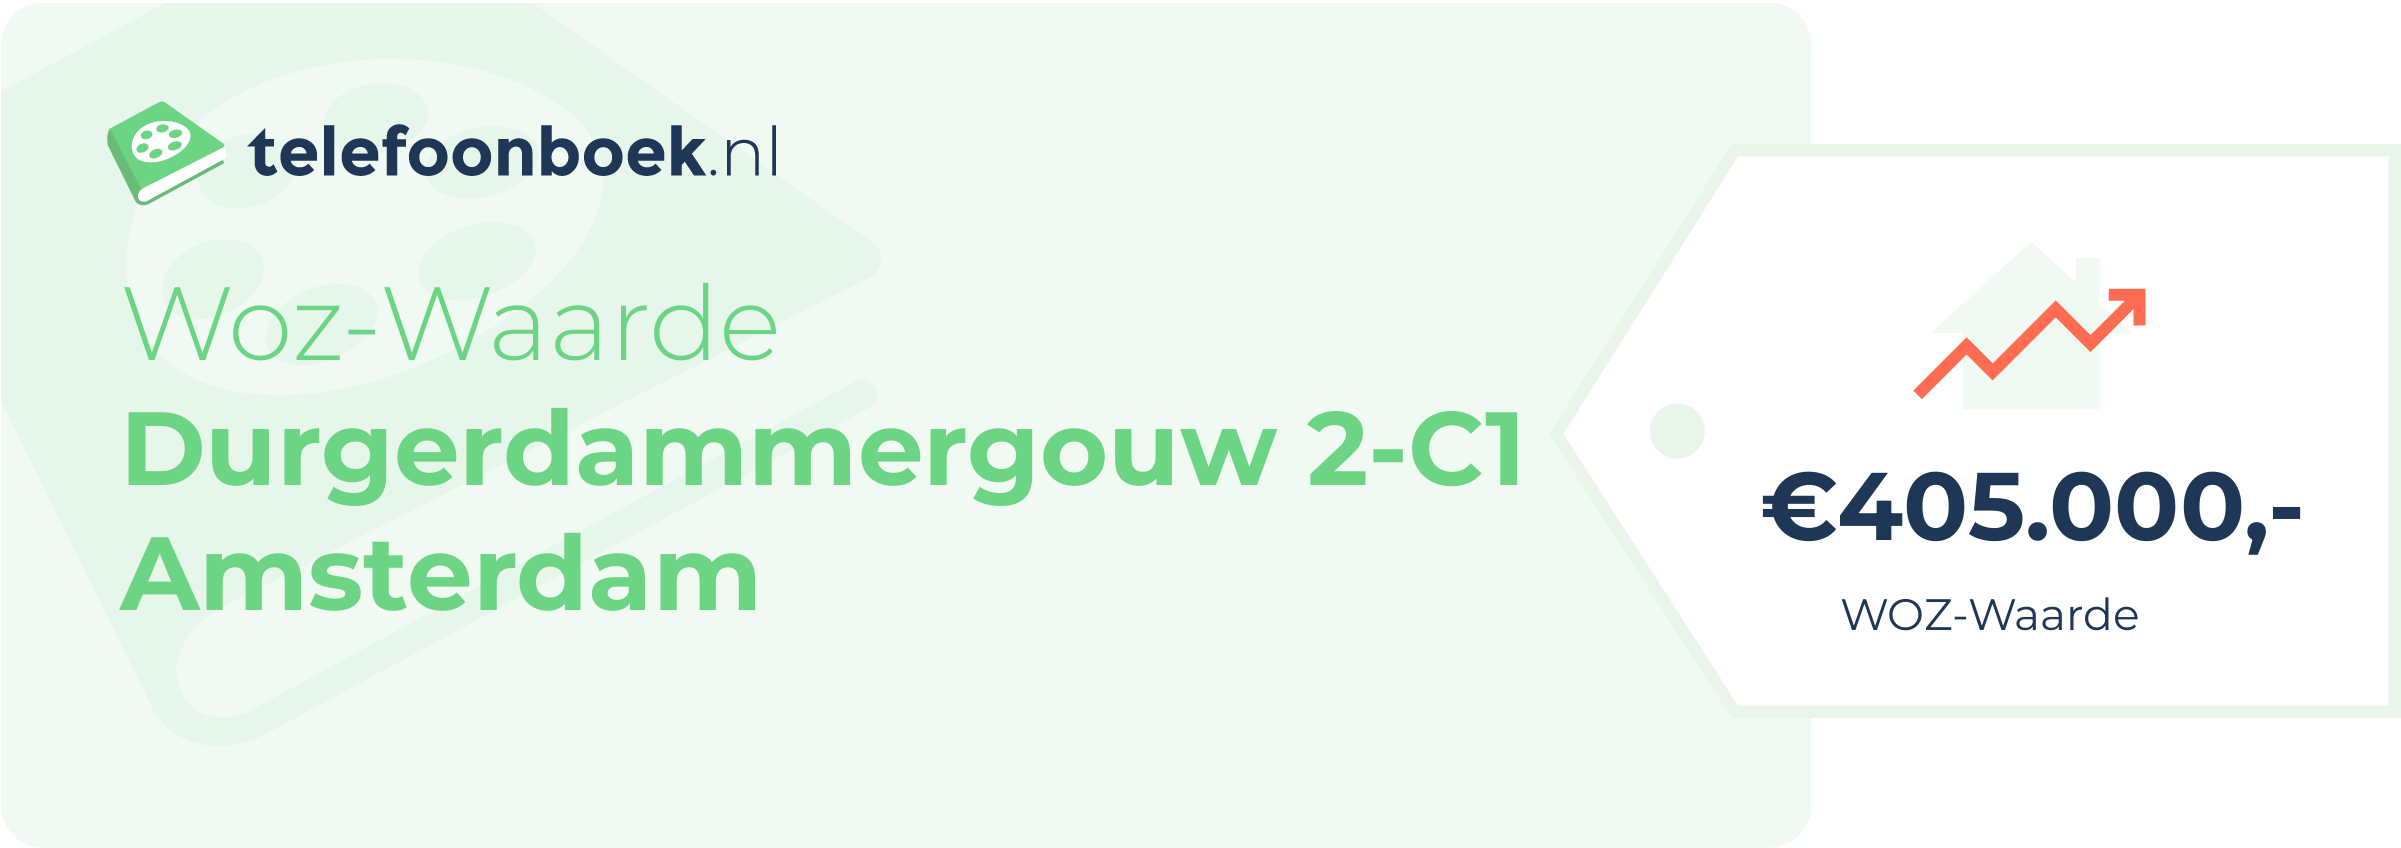 WOZ-waarde Durgerdammergouw 2-C1 Amsterdam